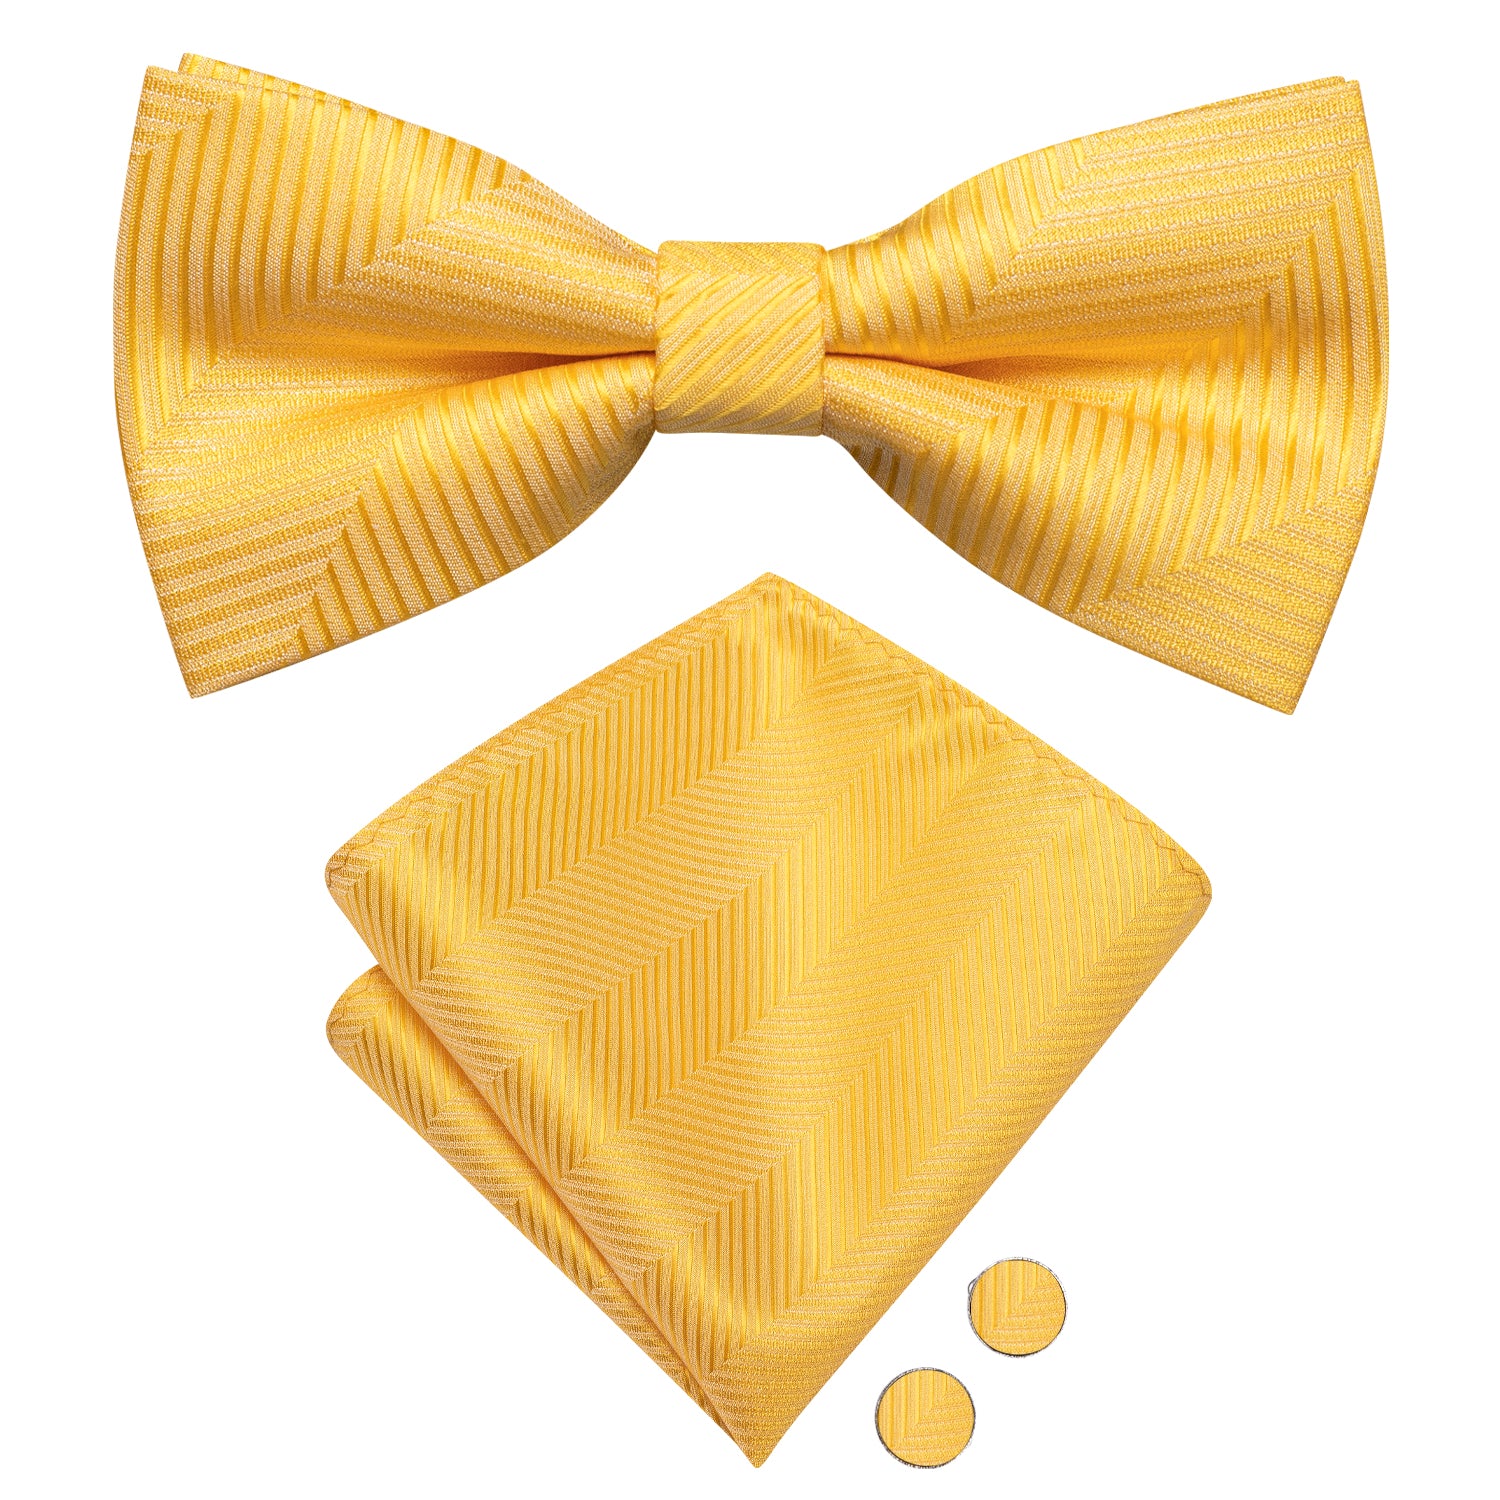 New Yellow Striped Pre-tied Bow Tie Hanky Cufflinks Set